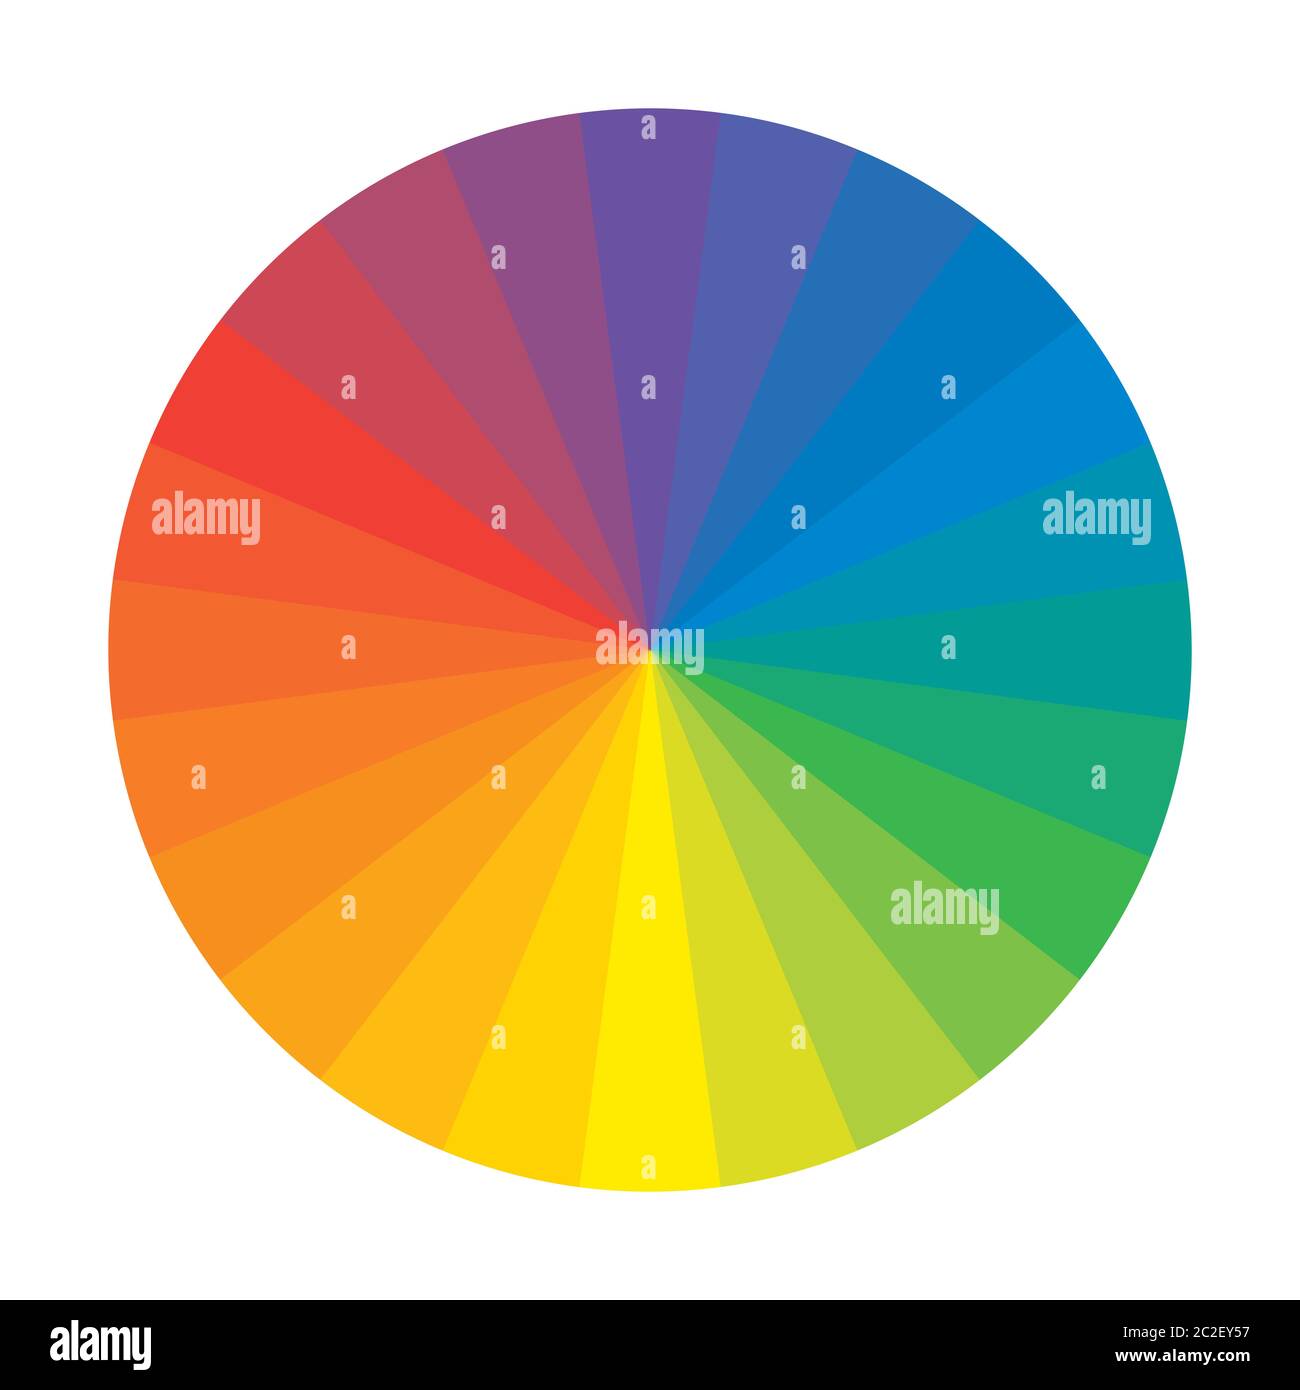 Rainbow spettrale cerchio di 24 multicolore segmenti policromi. L'armonica spettrale colorata tavolozza di pittore. Foto Stock